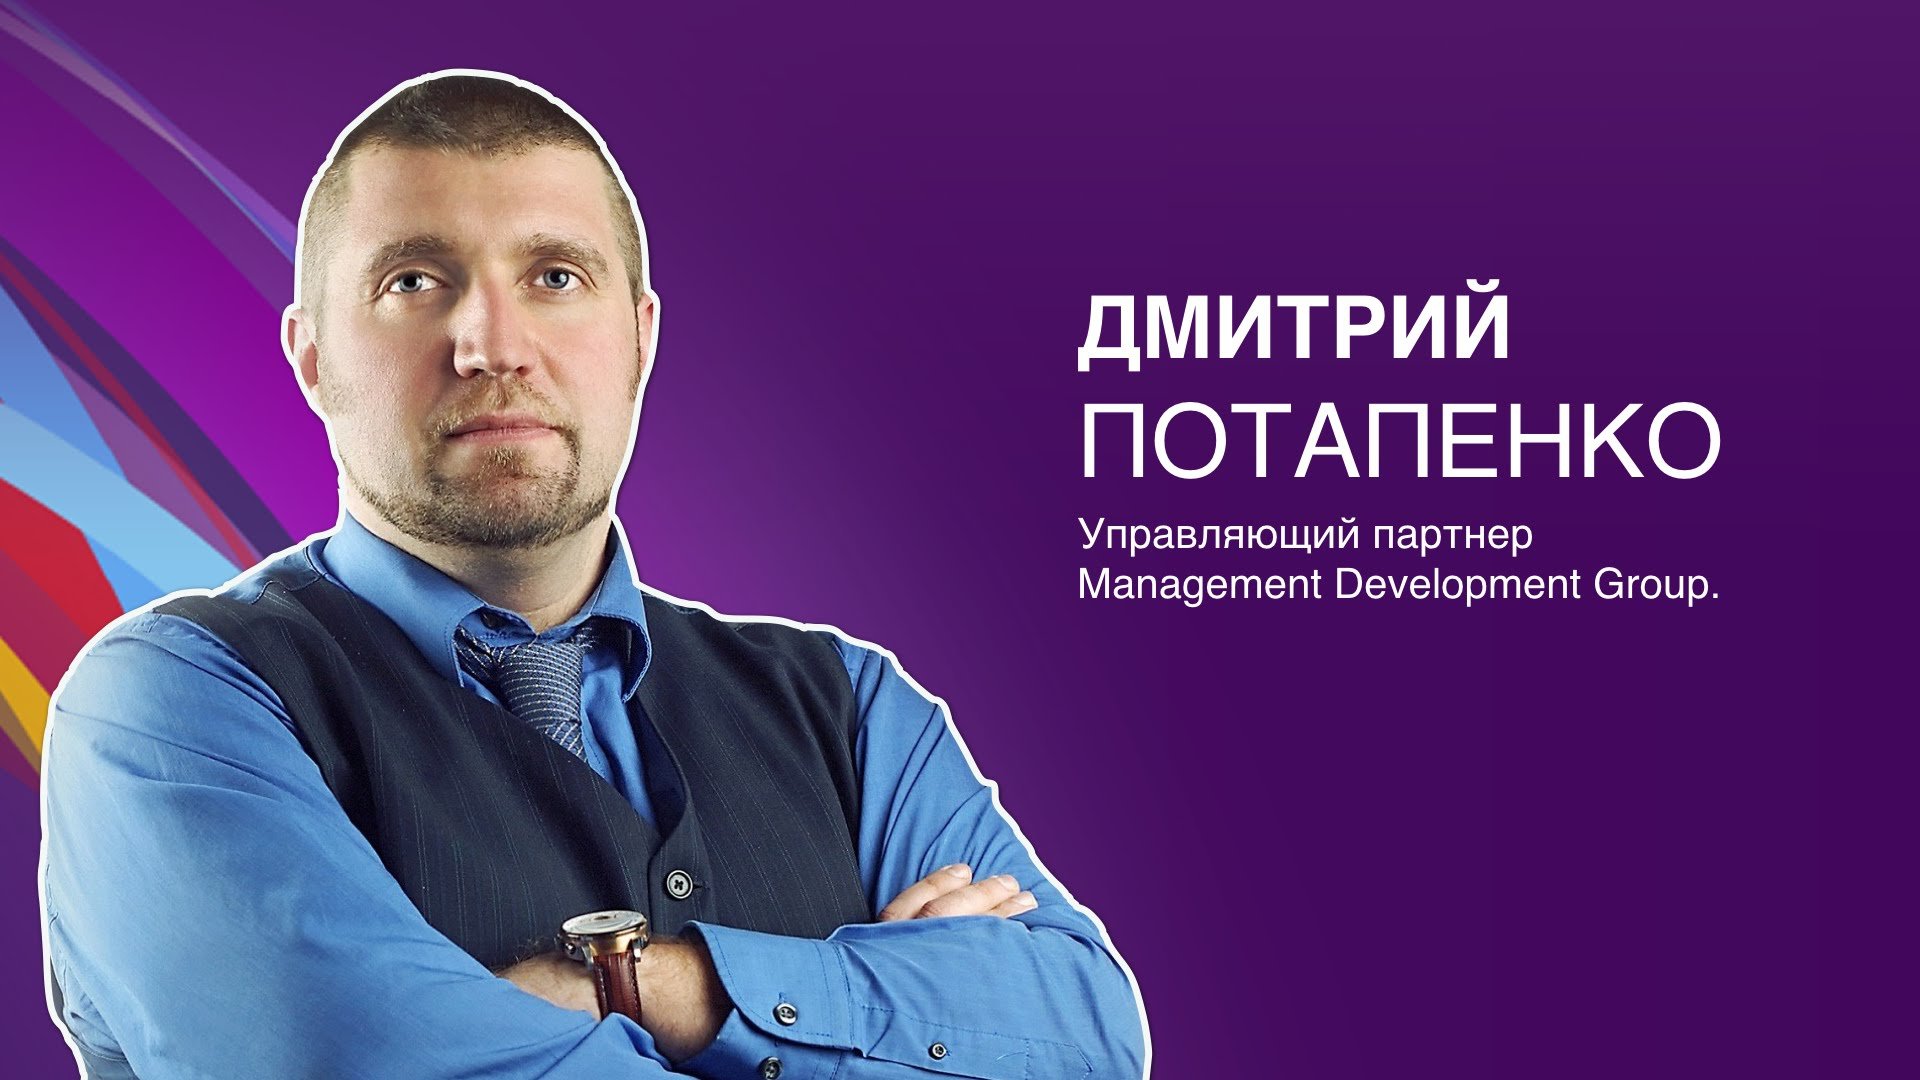 Потапенко Дмитрий - биография, достижения, интересные факты